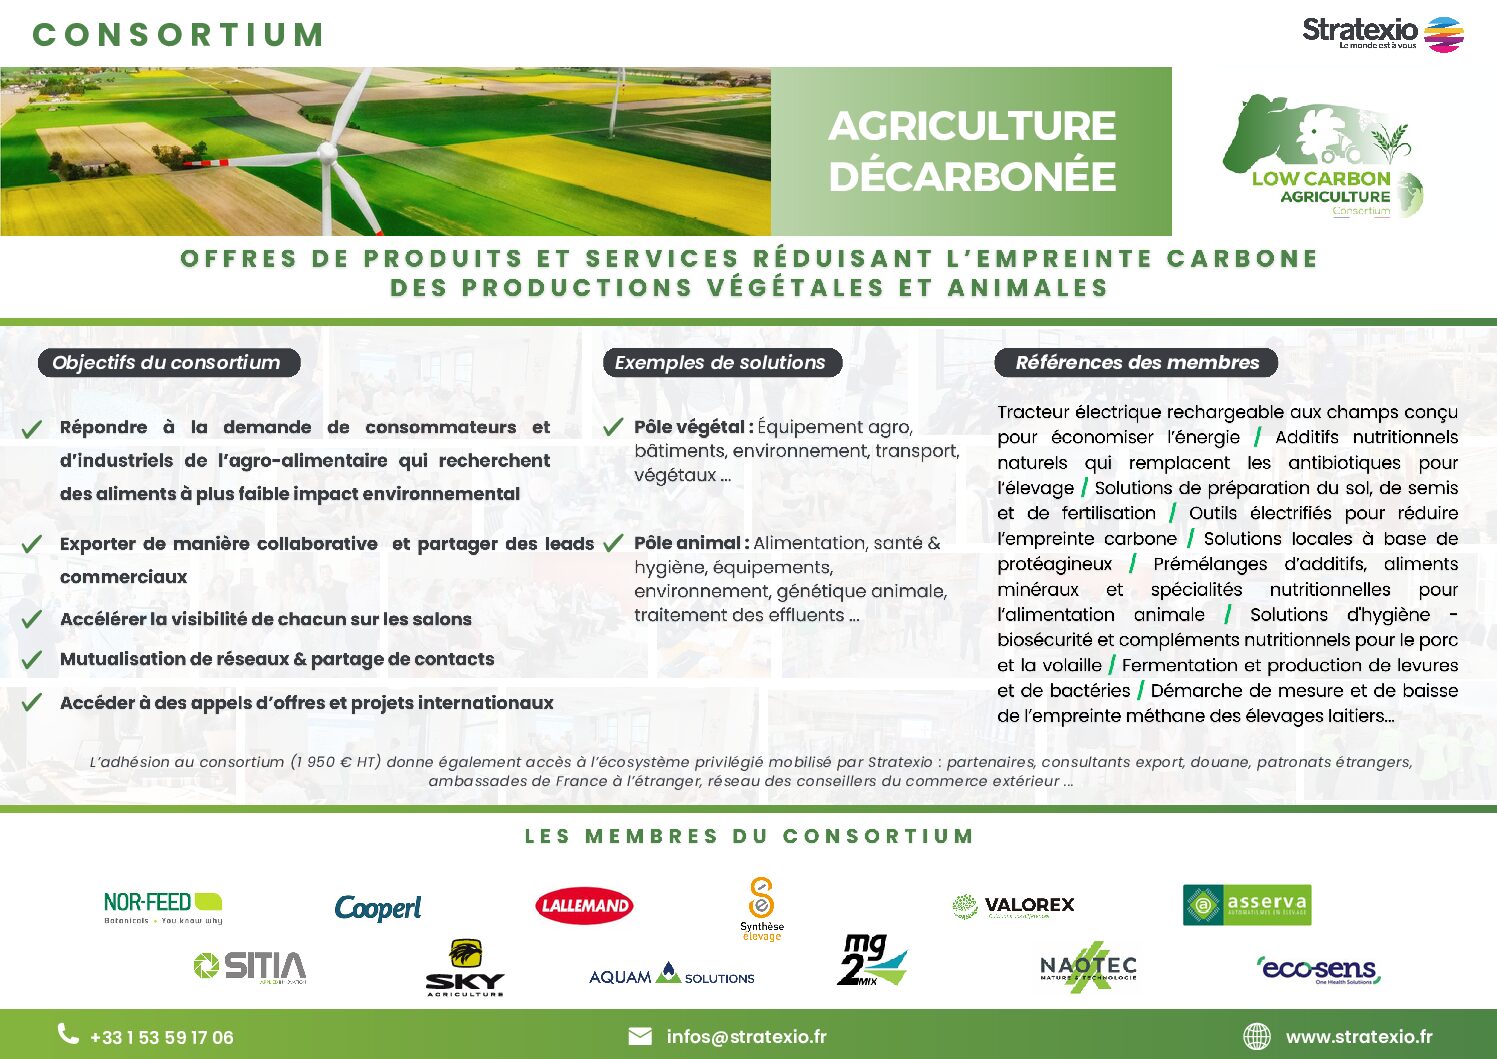 Présentation du consortium économique des entreprises françaises qui agissent sur la décarbonations dans le secteur agricole